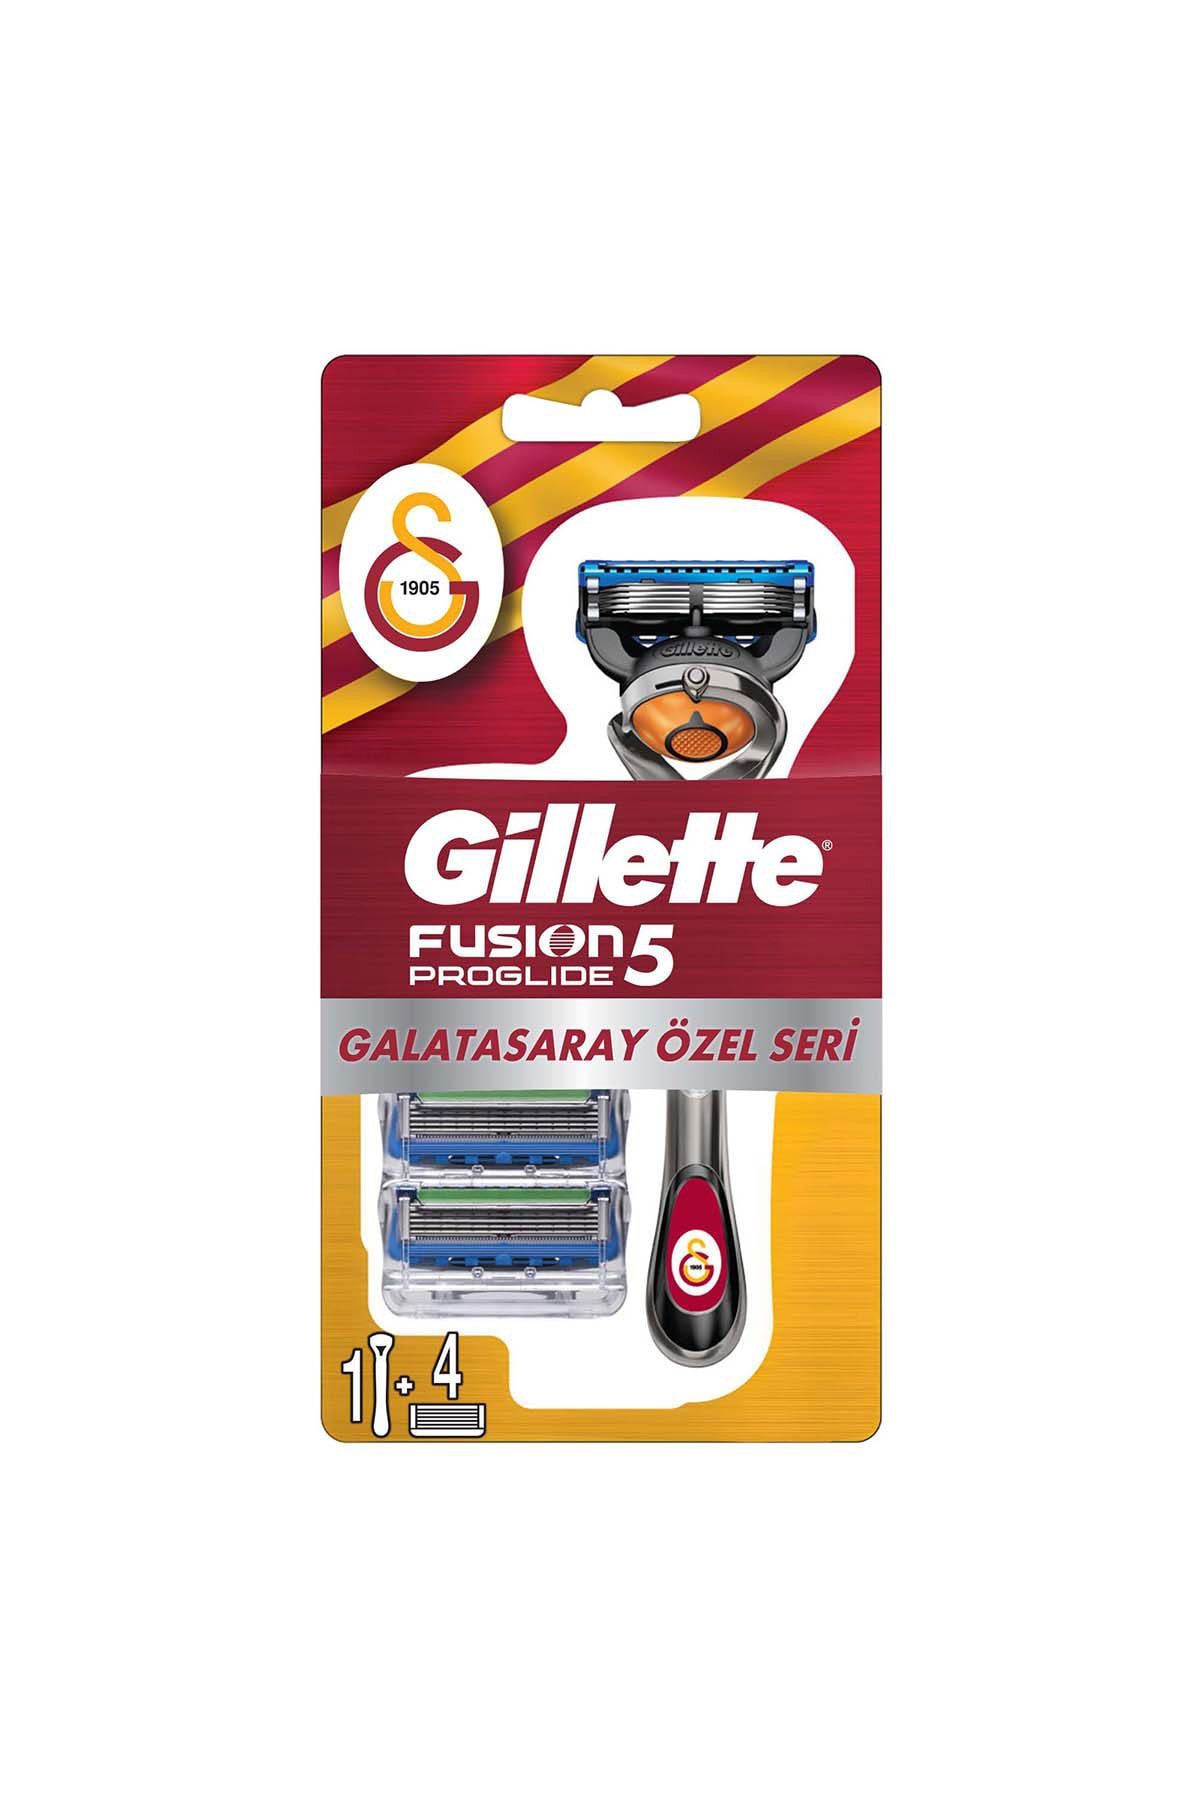 Gillette Fusion Proglide Makine + 4'lü Yedek Bıçak Galatasaray Özel Seri